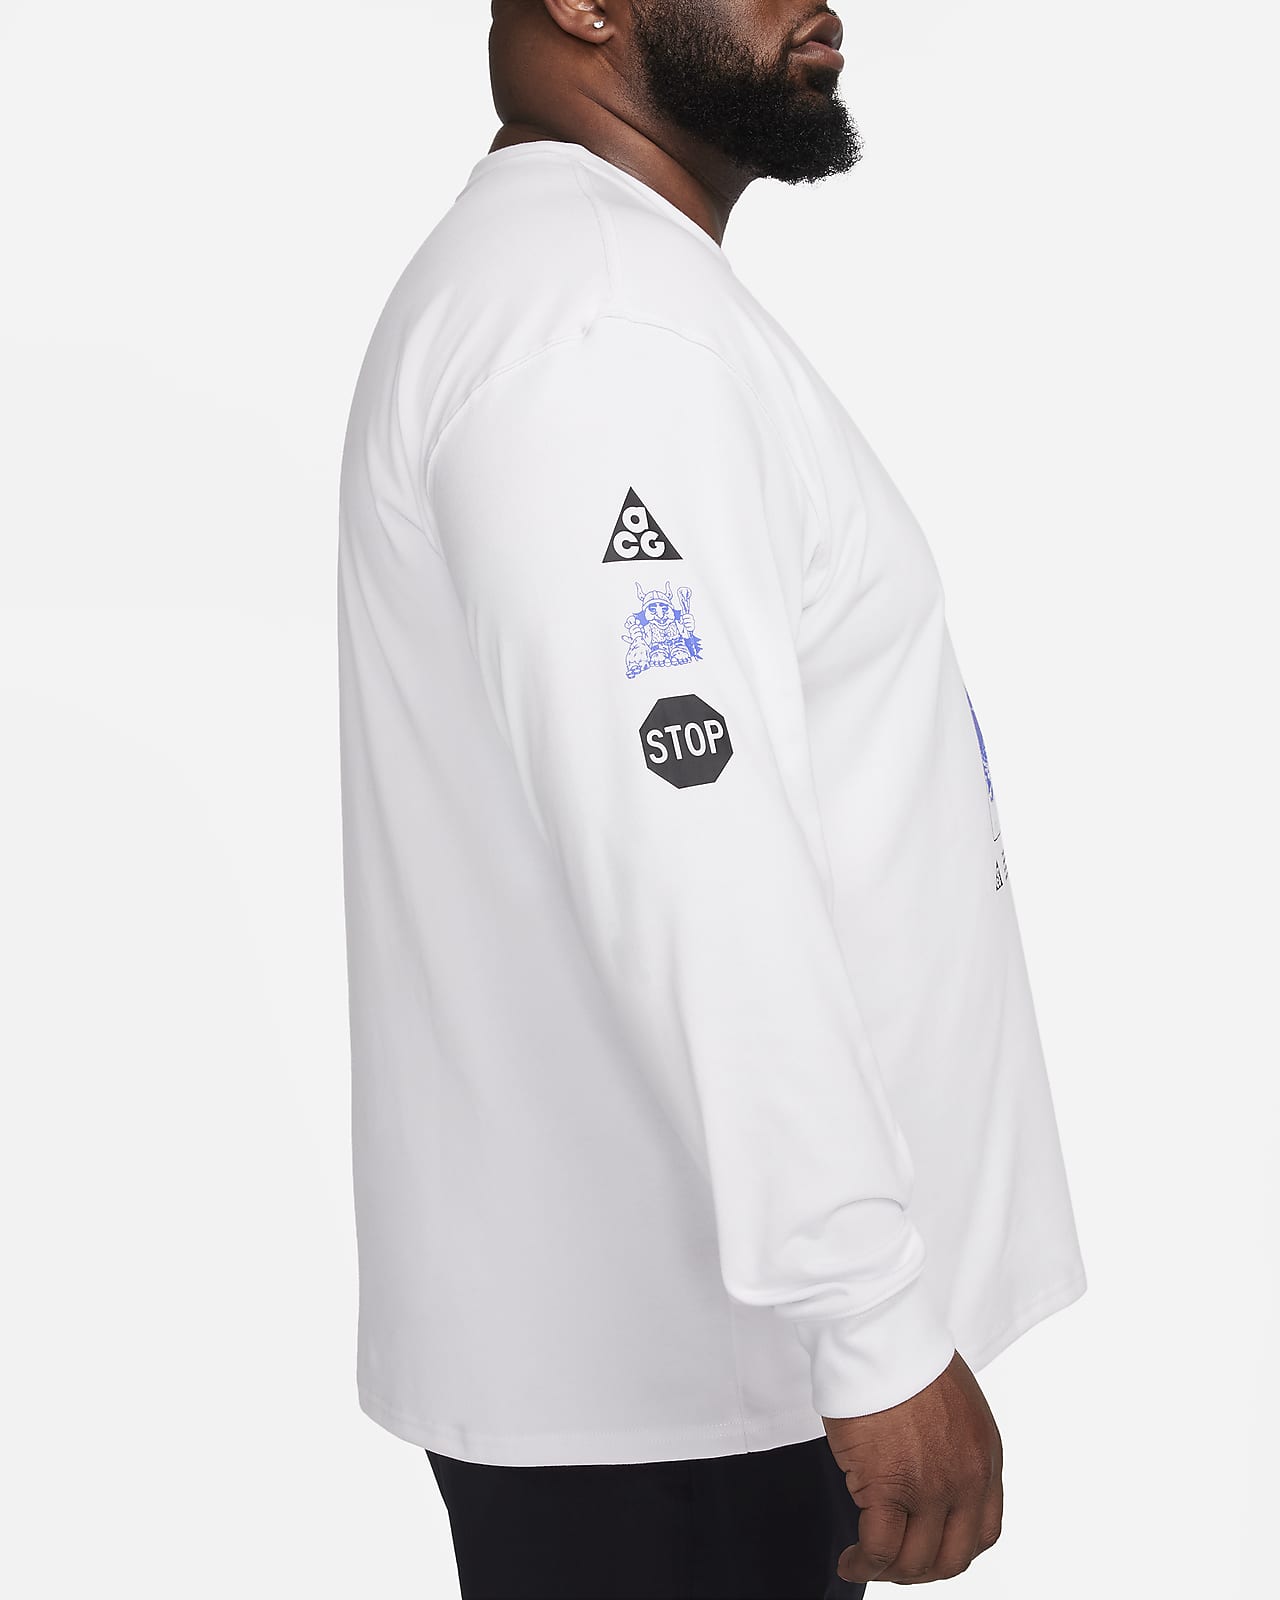 Nike ACG Men's Long-Sleeve T-Shirt. Nike LU